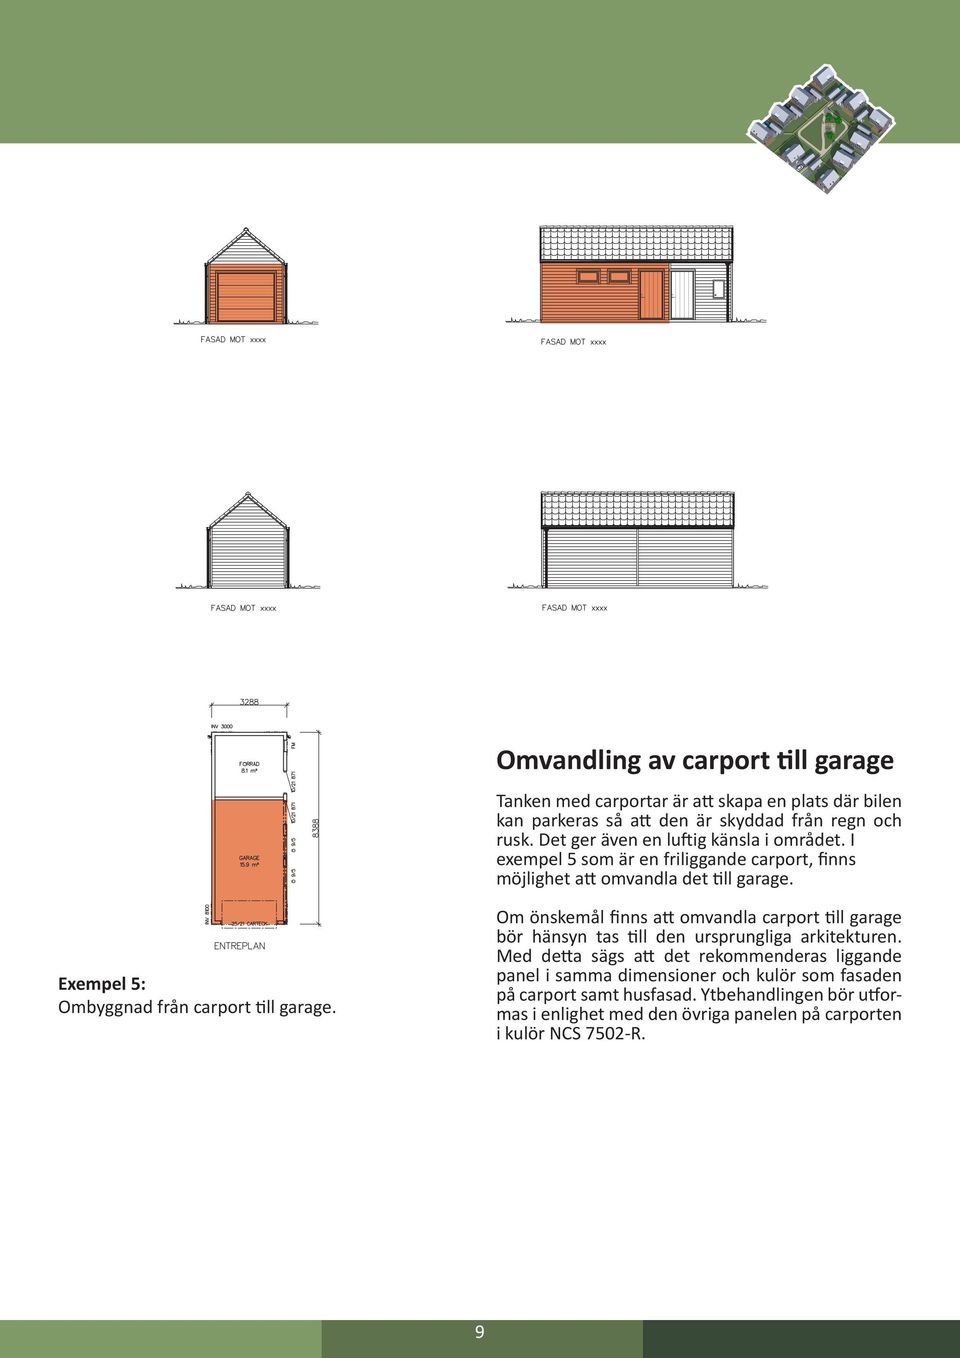 Exempel 5: Ombyggnad från carport till garage. Om önskemål finns att omvandla carport till garage bör hänsyn tas till den ursprungliga arkitekturen.